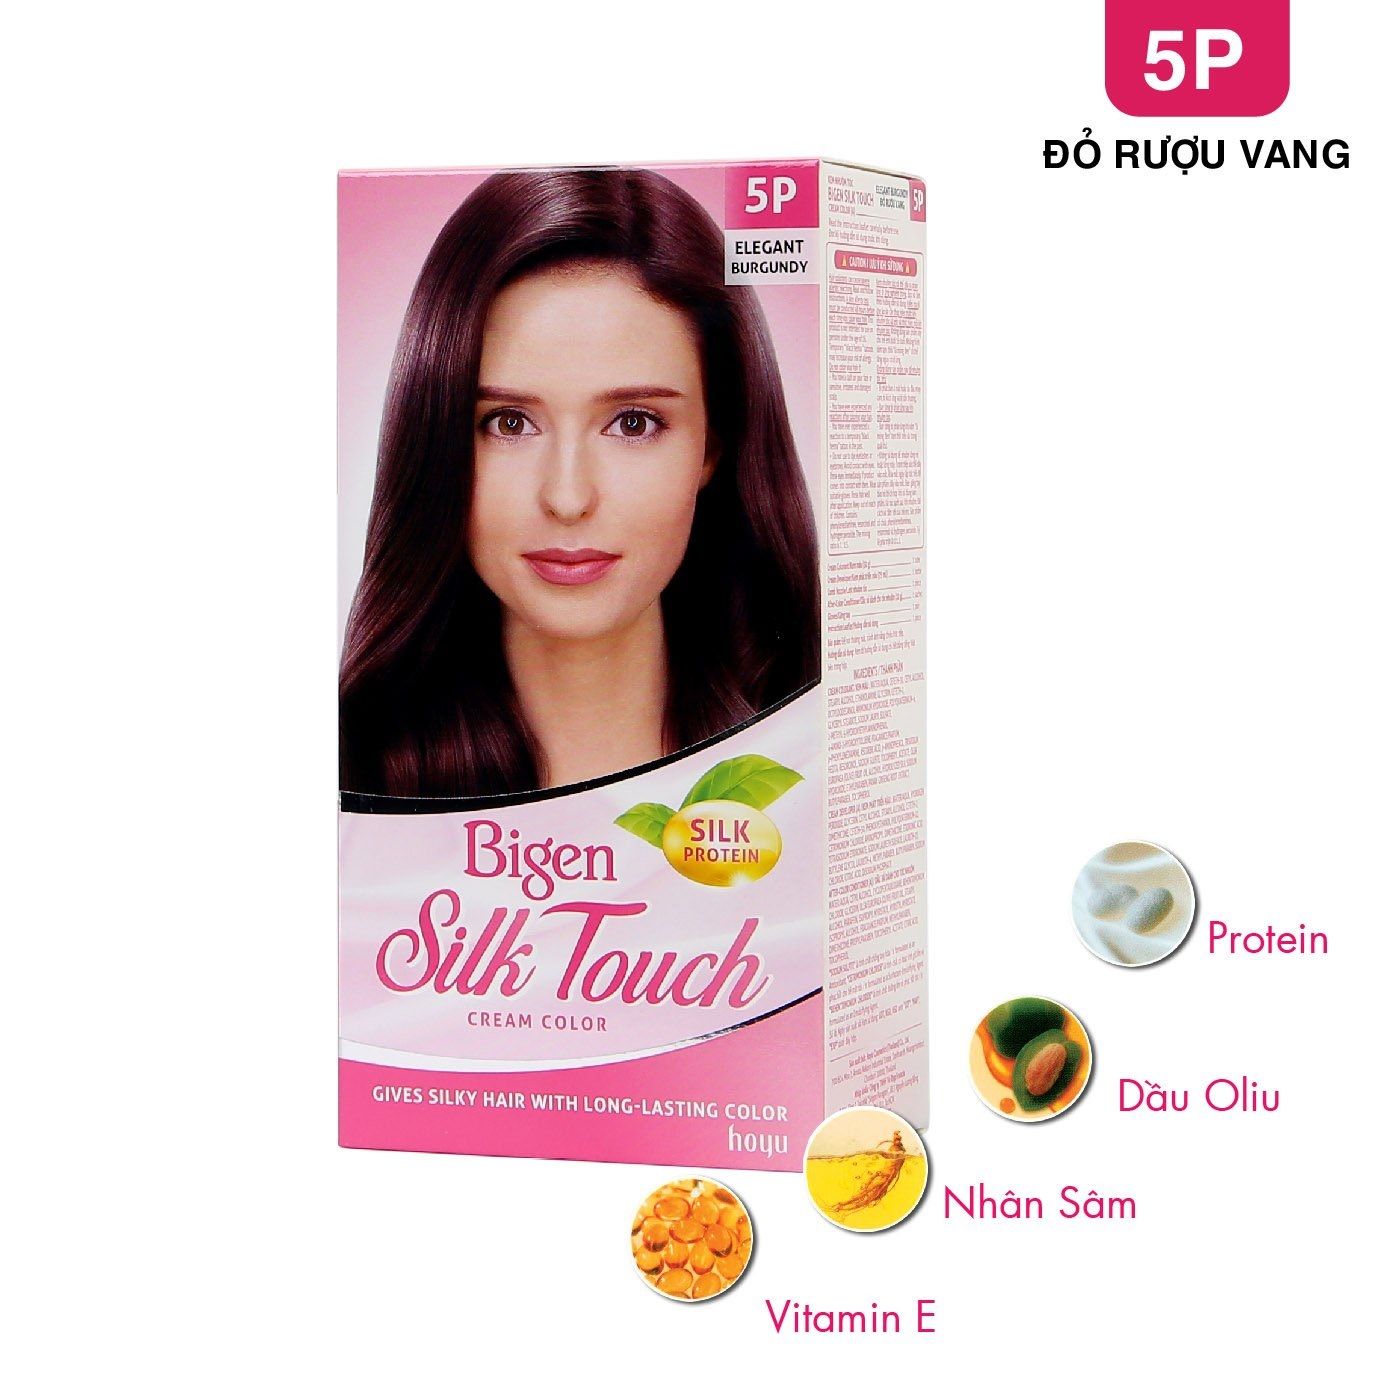  Kem Nhuộm Tóc Phủ Bạc Bigen Silk Touch Cream Color 5P - Đỏ rượu vang 